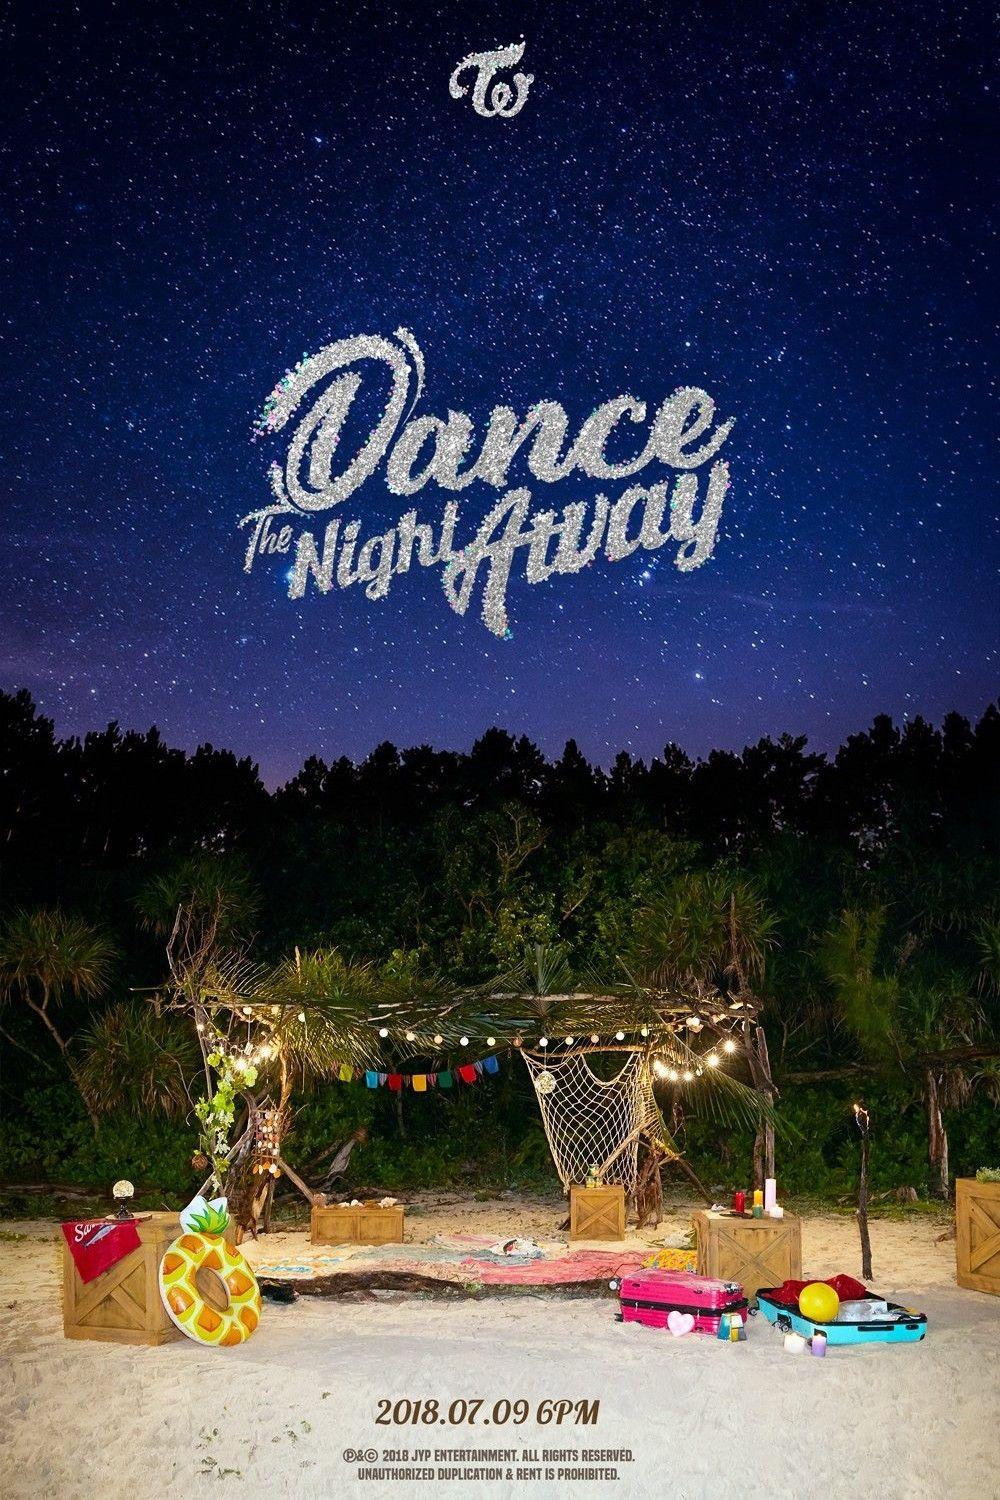 TWICE Dance the Night Away 2018.07.09. 6PM #twice_comeback. Twice